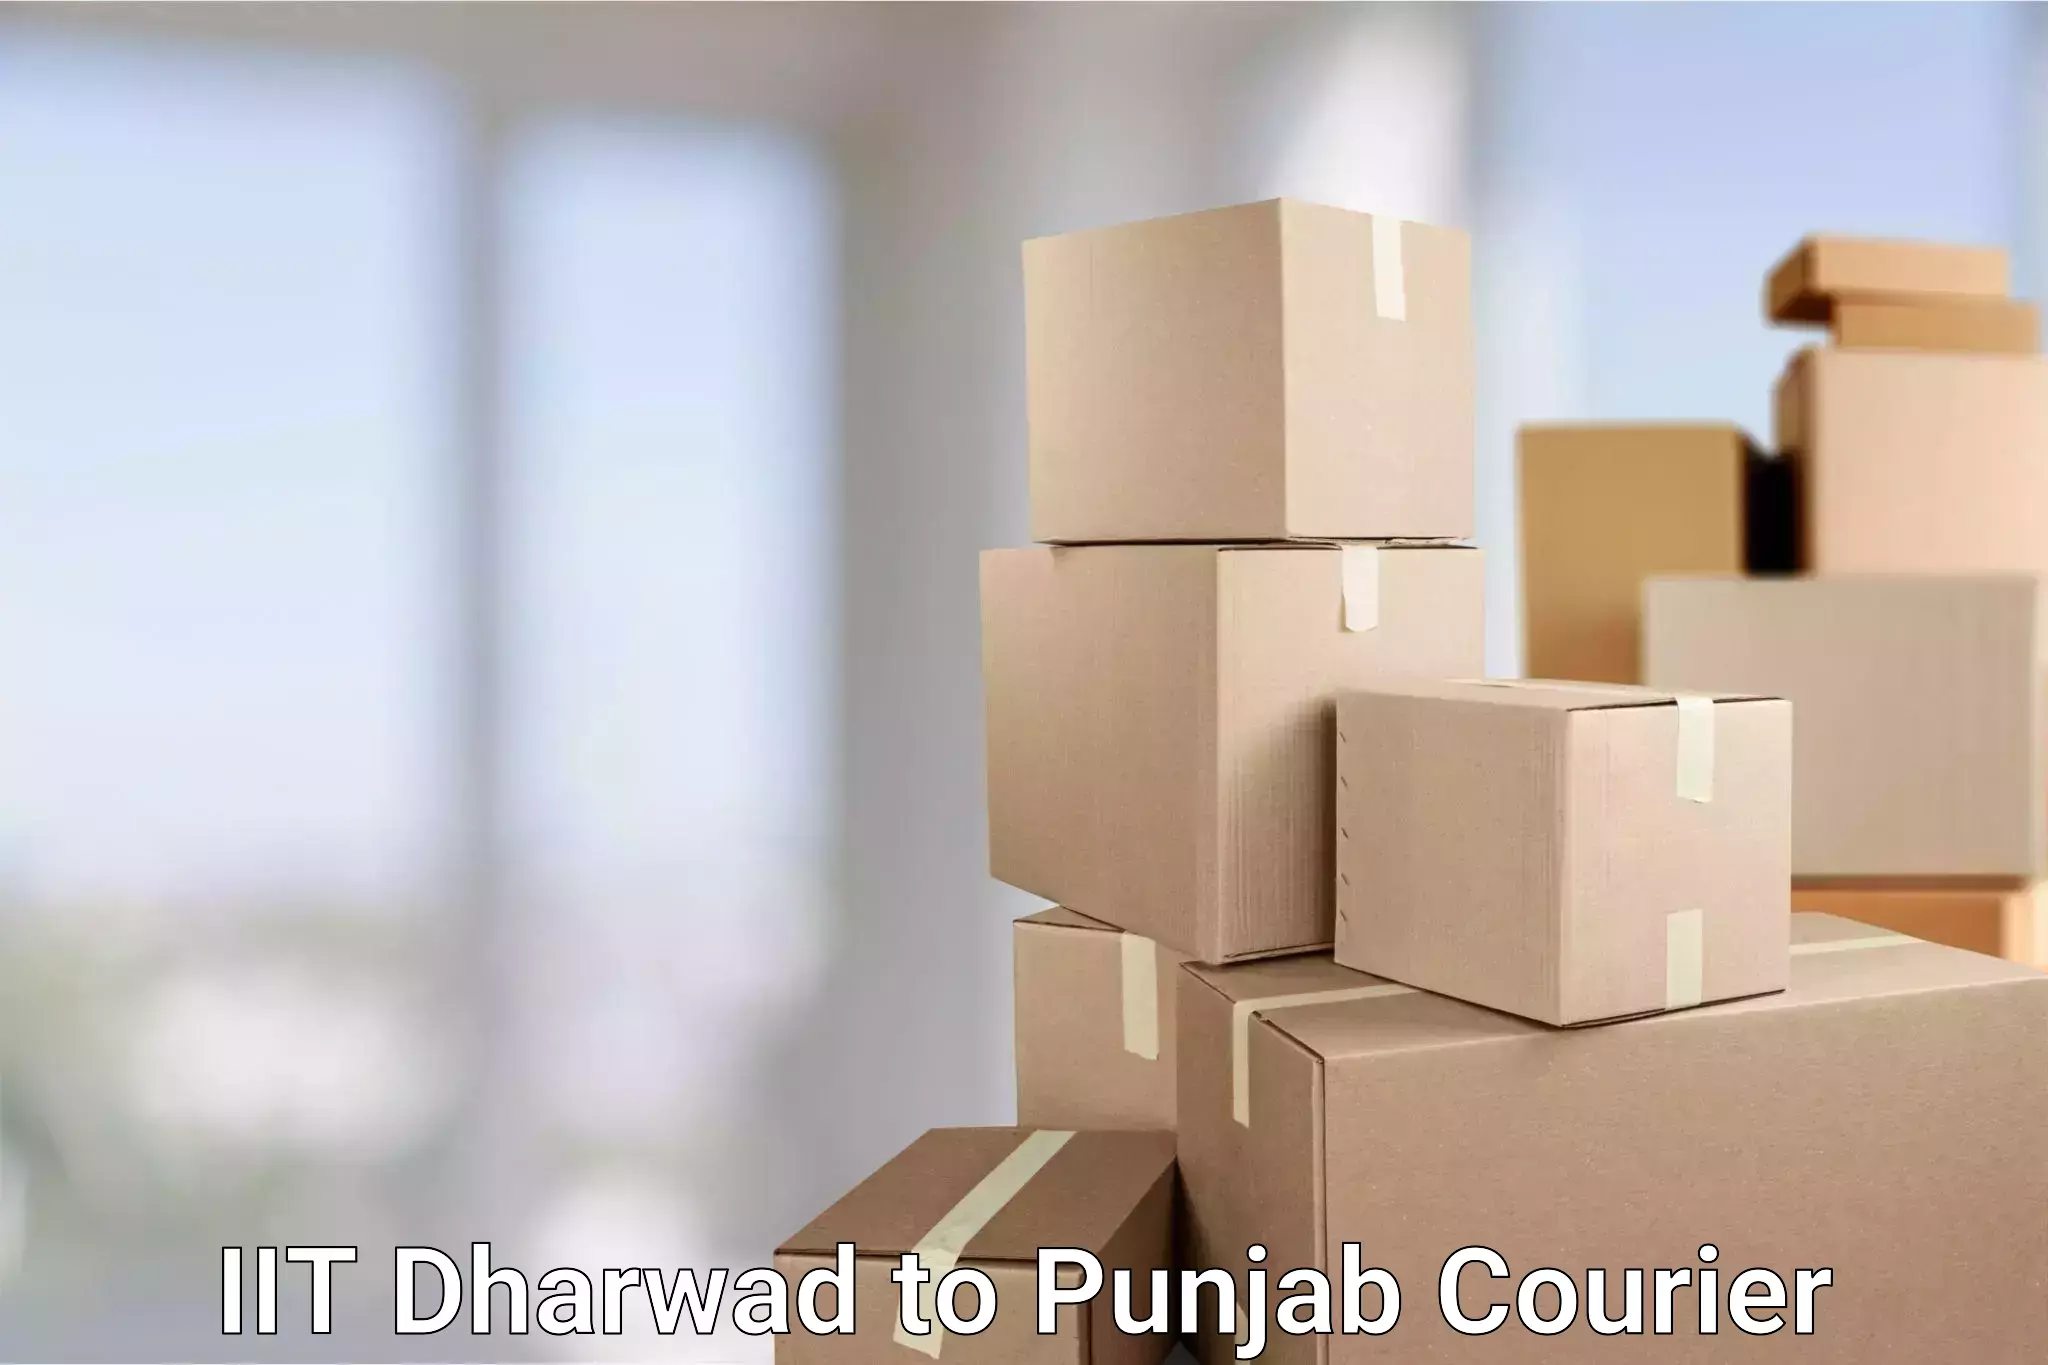 Express logistics IIT Dharwad to Punjab